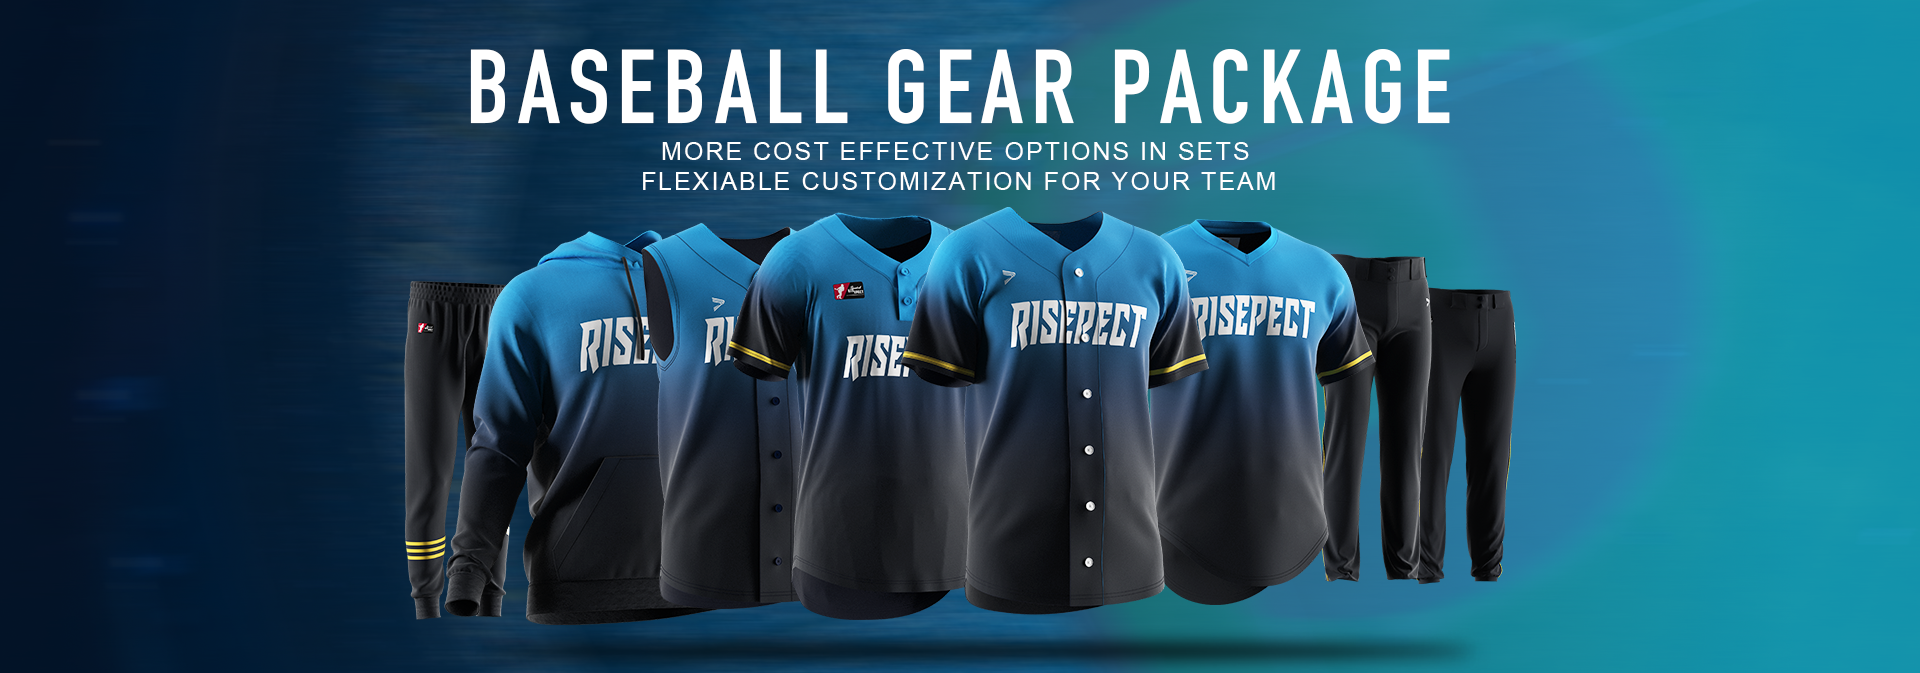 Baseball Gear Package